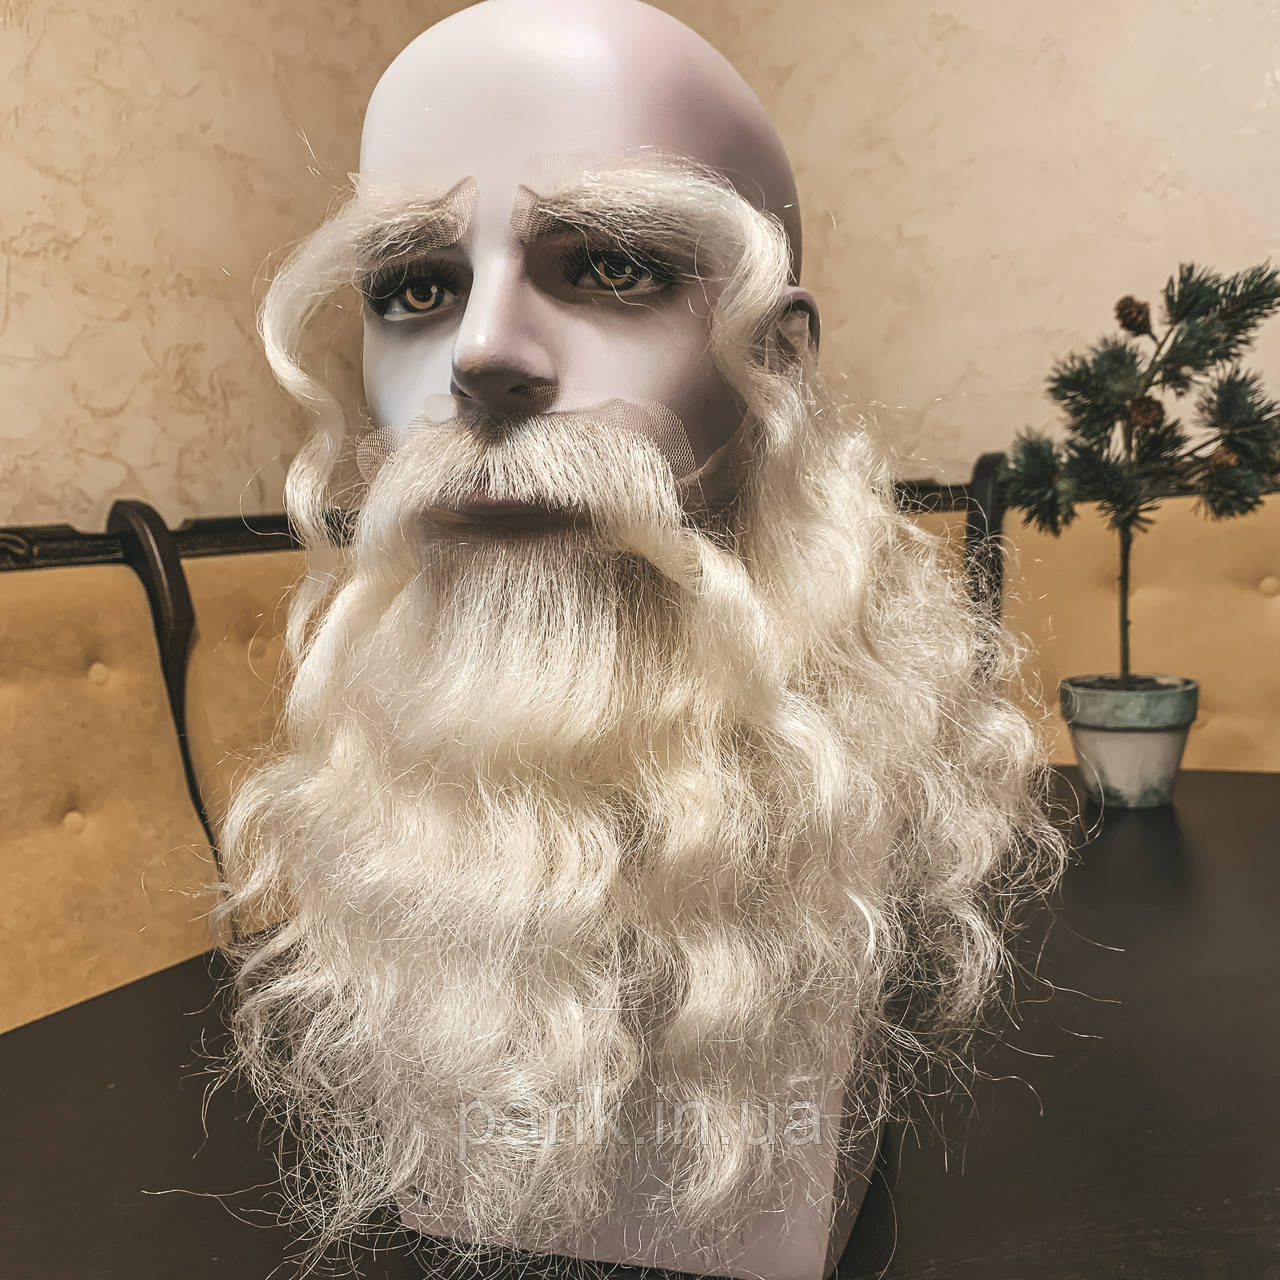 Борода та вуса, брови Діда Мороза реалістичні білі — накладка на сітці сивого кольору